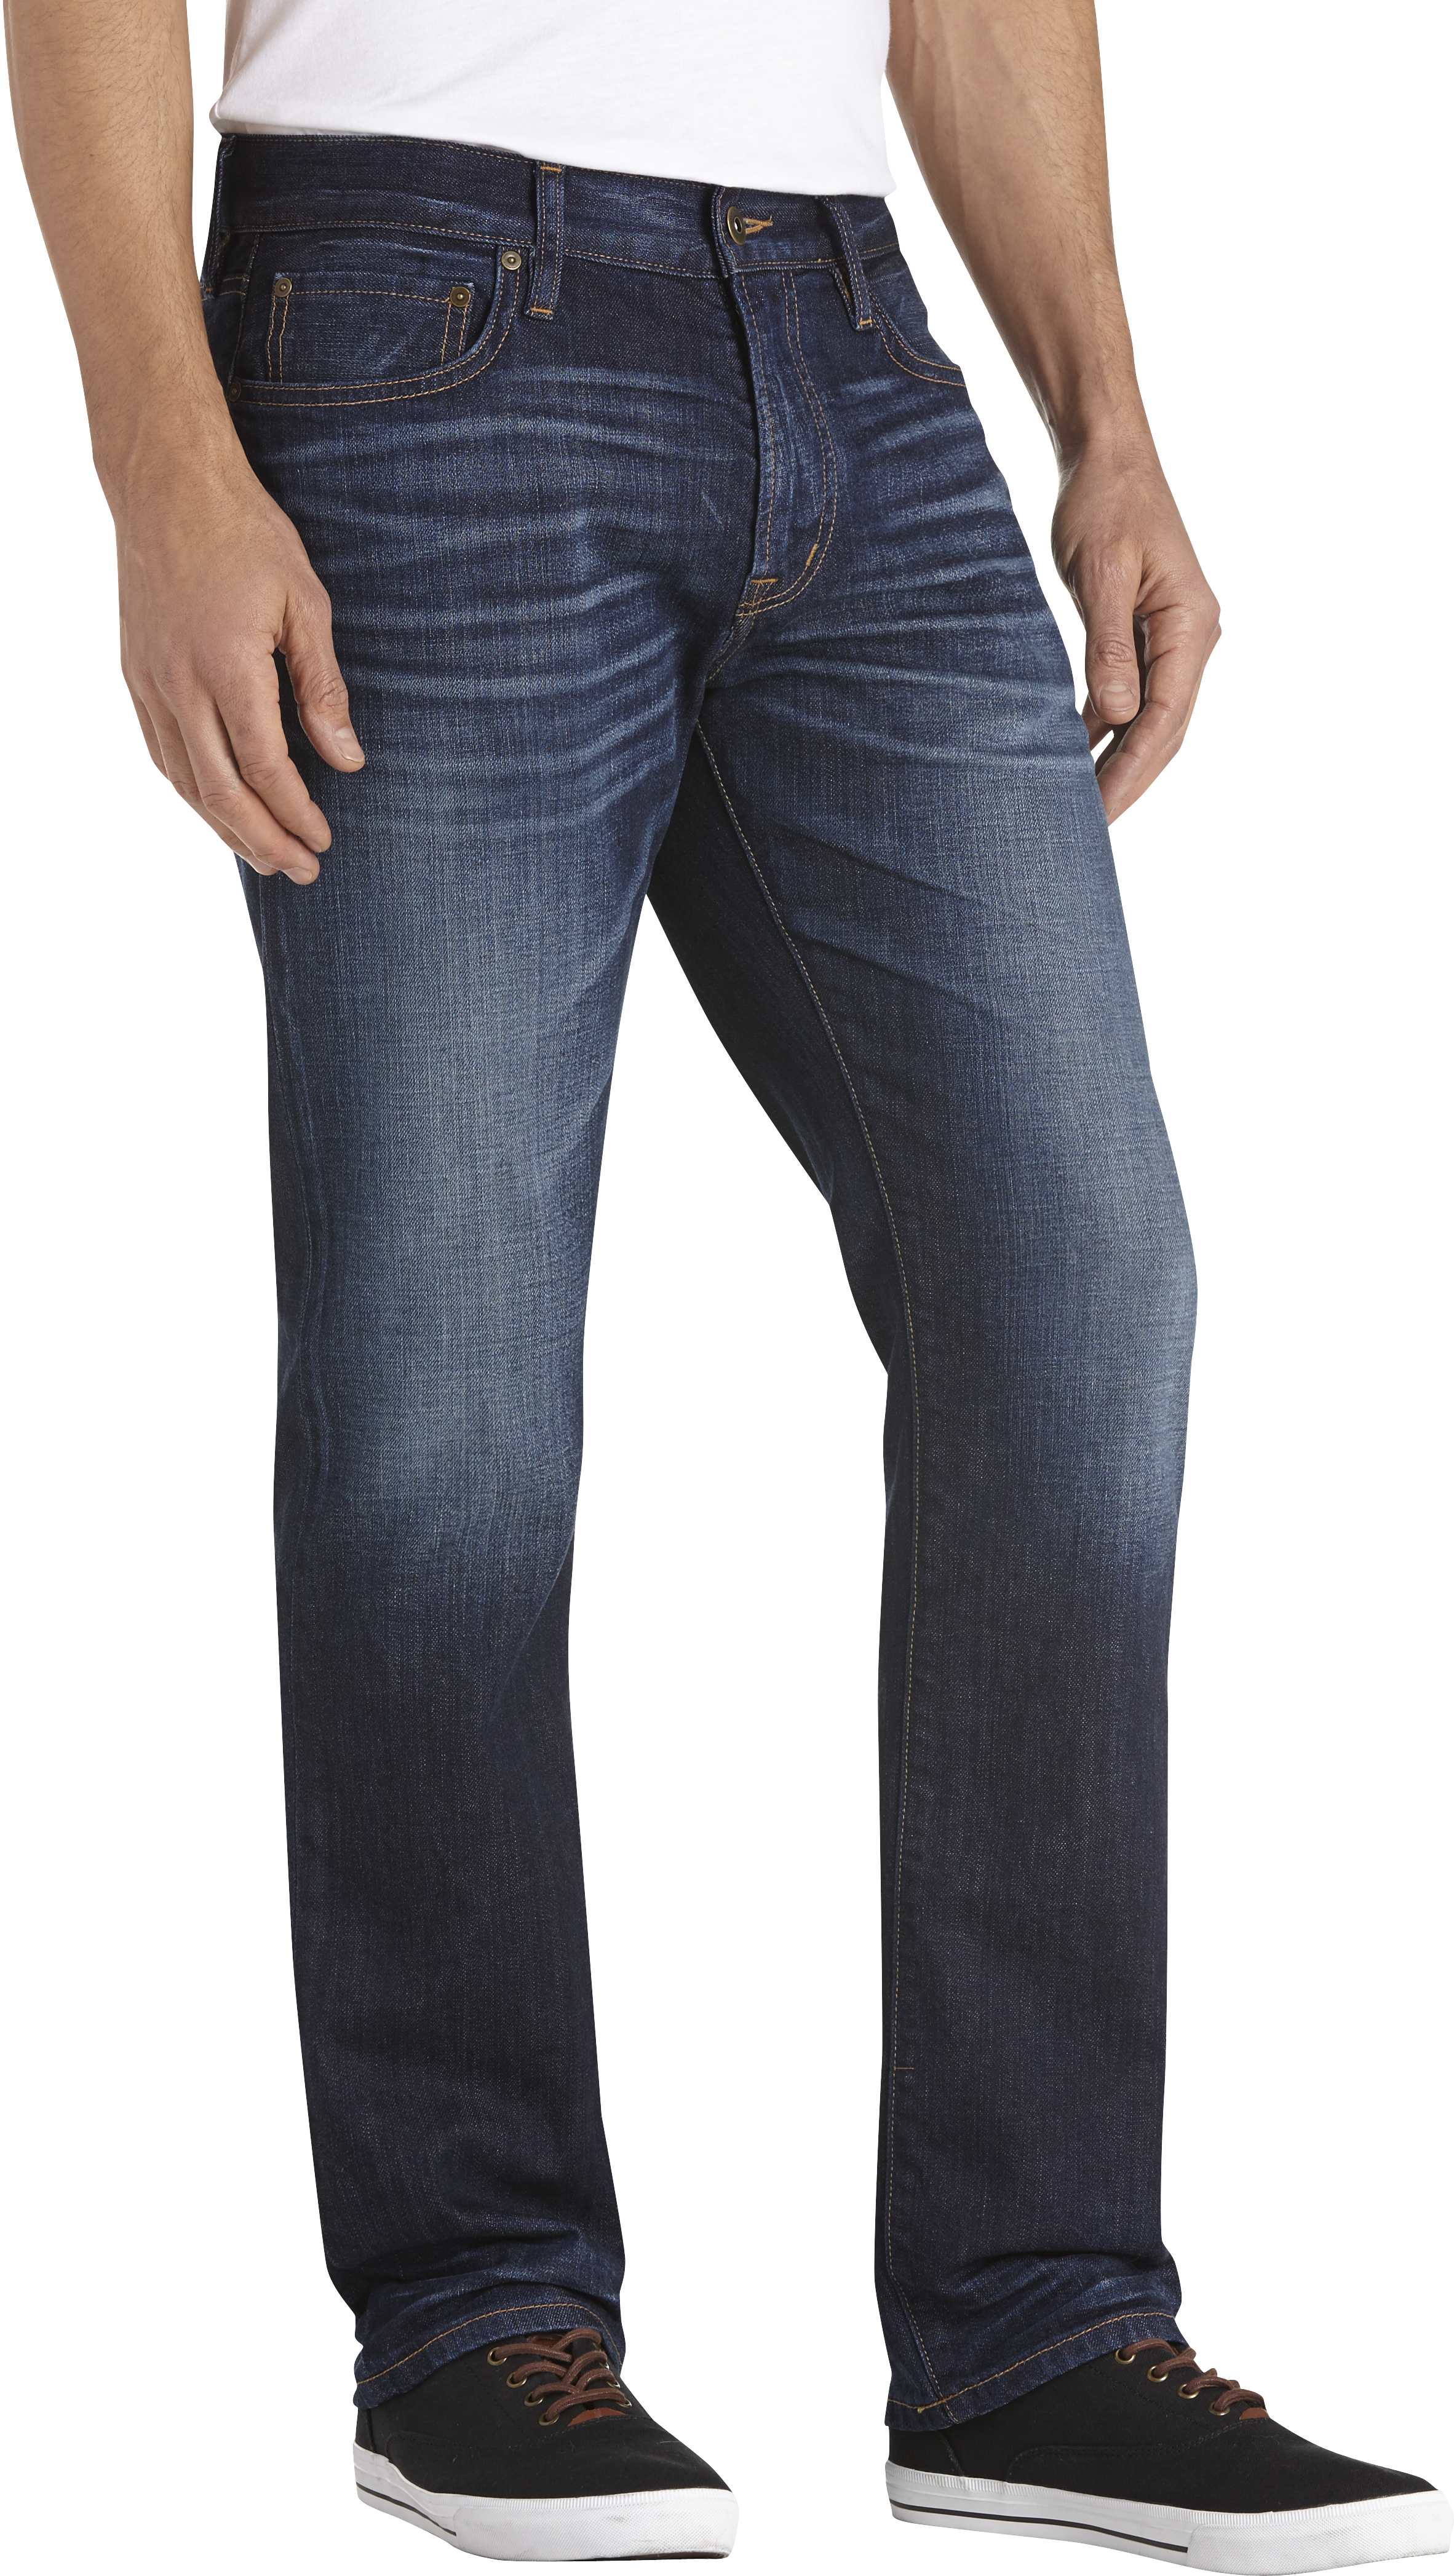 Joseph Abboud Dark Blue Wash Classic Fit Jeans - Men's Classic Fit ...